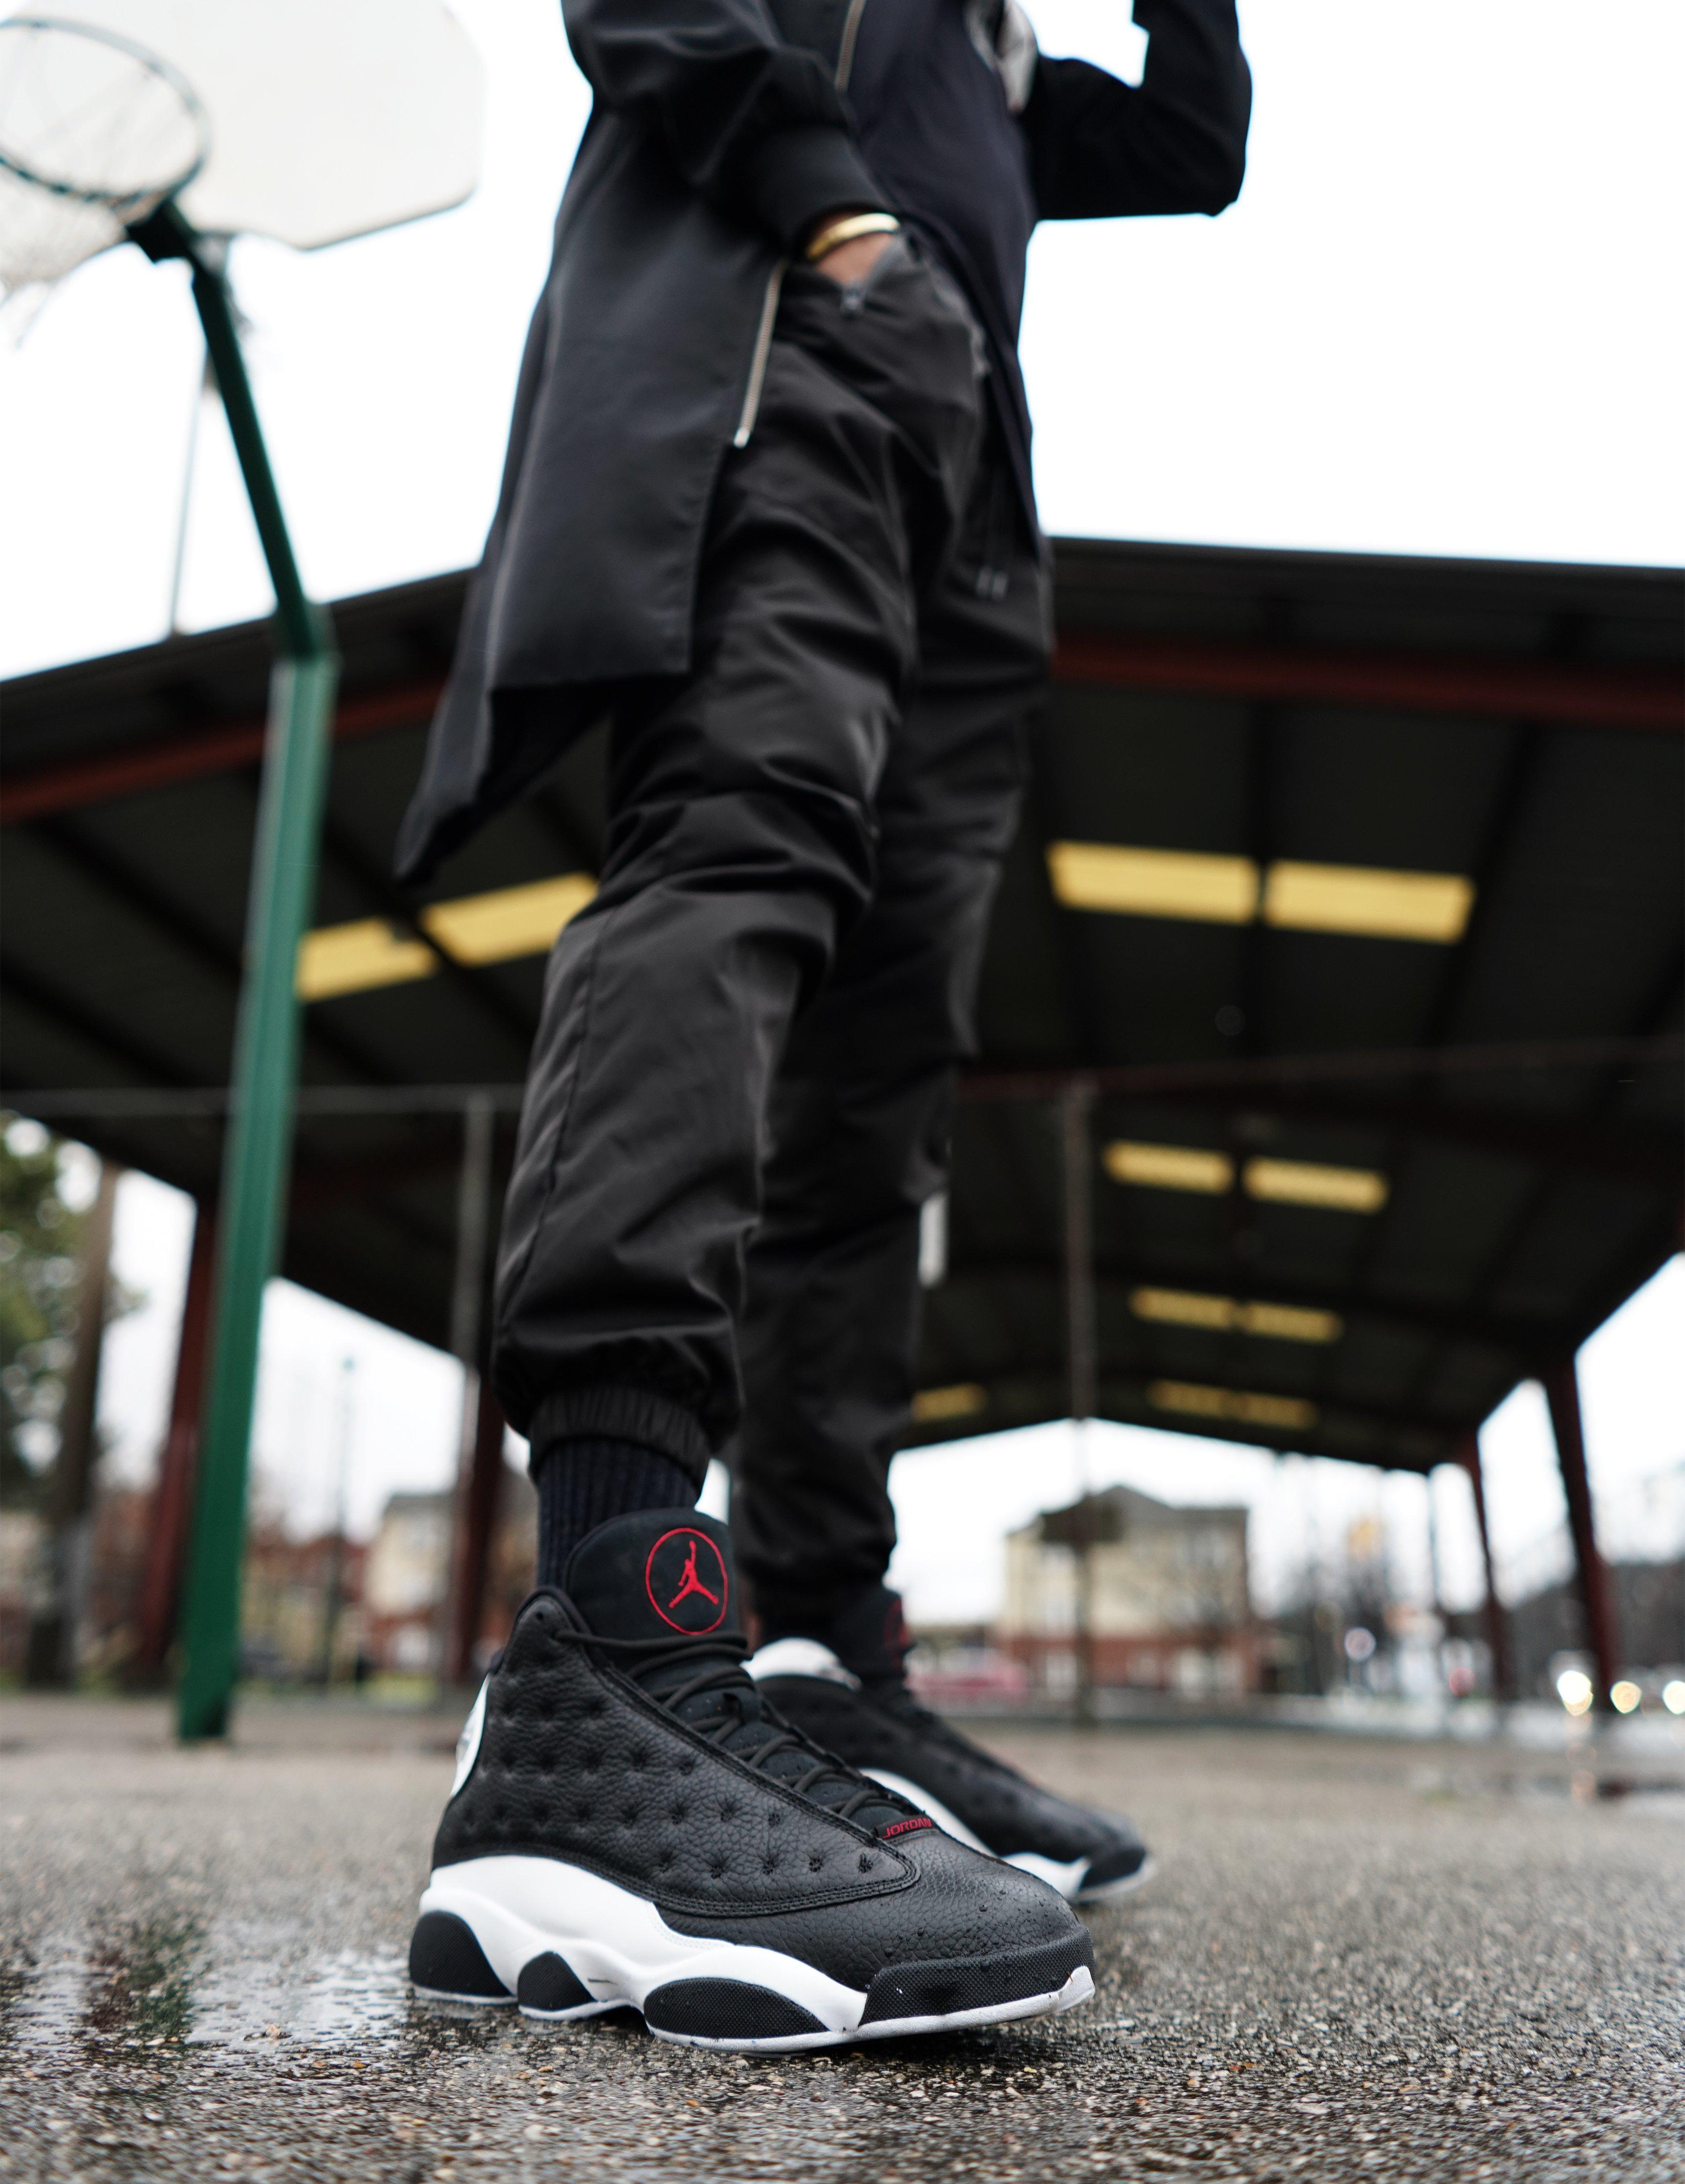 Sneakers Release - Air Jordan Retro 13 "Reverse He Got ...